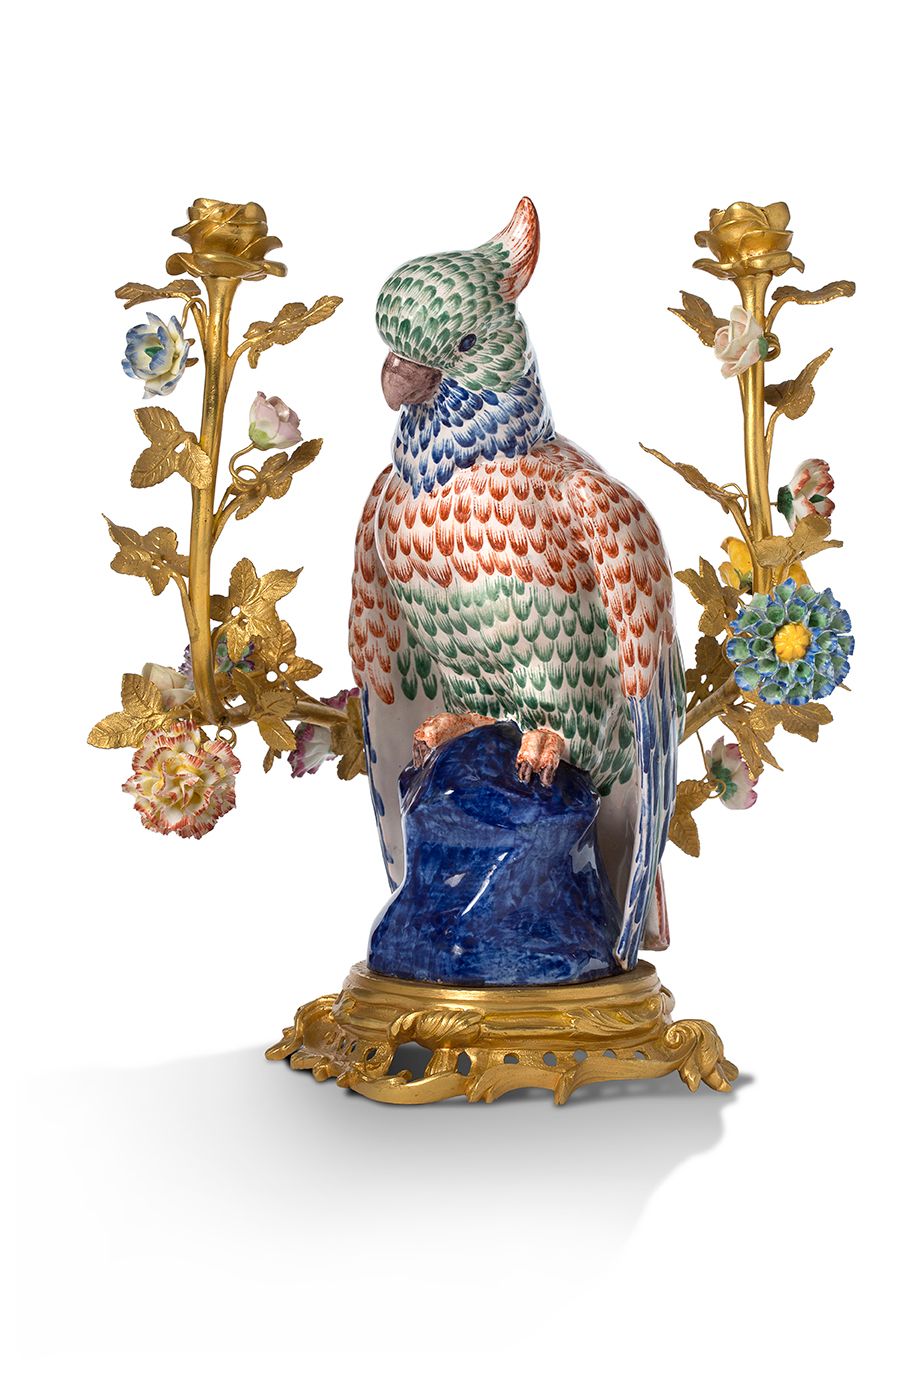 Null 一个双灯鎏金铜烛台，装饰有多色陶制鹦鹉和多色瓷制花朵。底座是弯曲的。
18世纪的风格。
高36，宽30厘米
 （小事故和缺失的部分）。